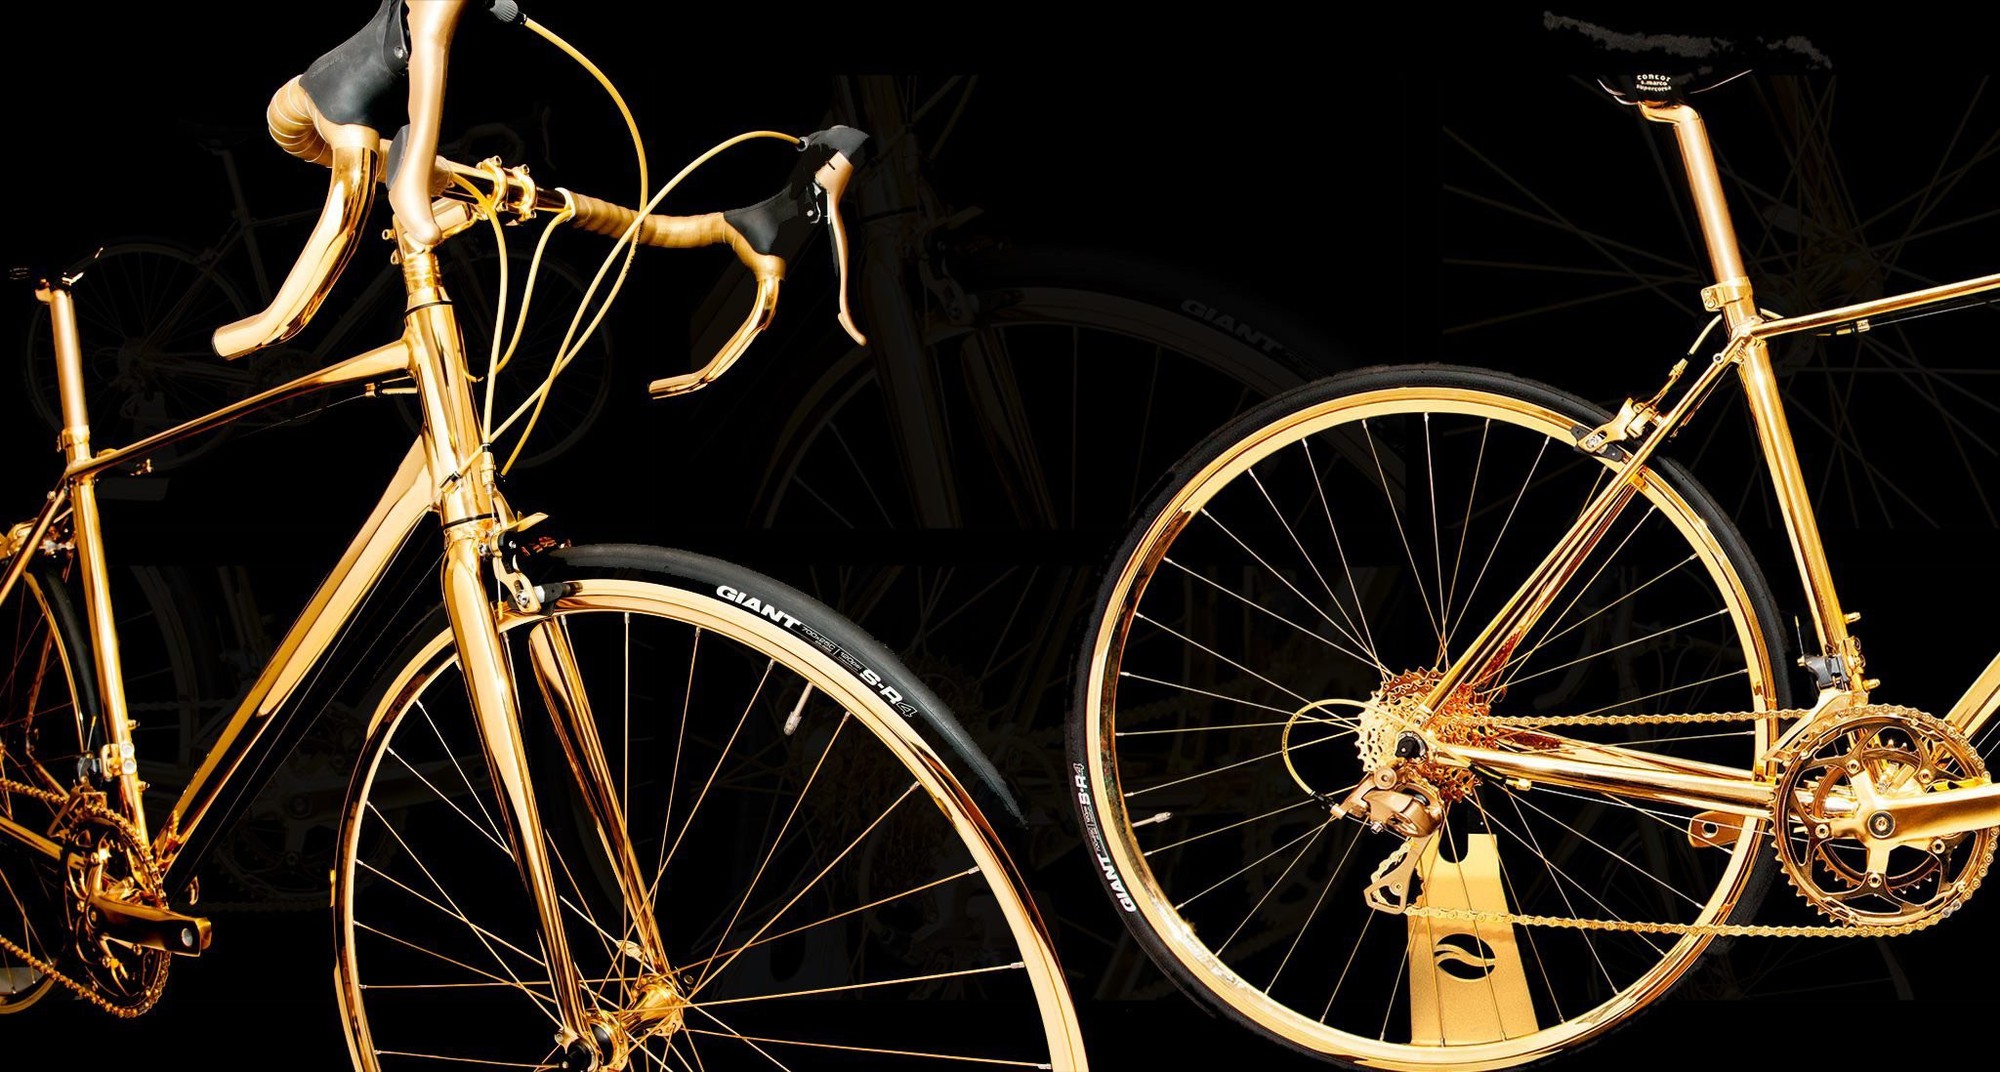 Cận cảnh chiếc xe đạp dát vàng có giá gần 10 tỷ đồng